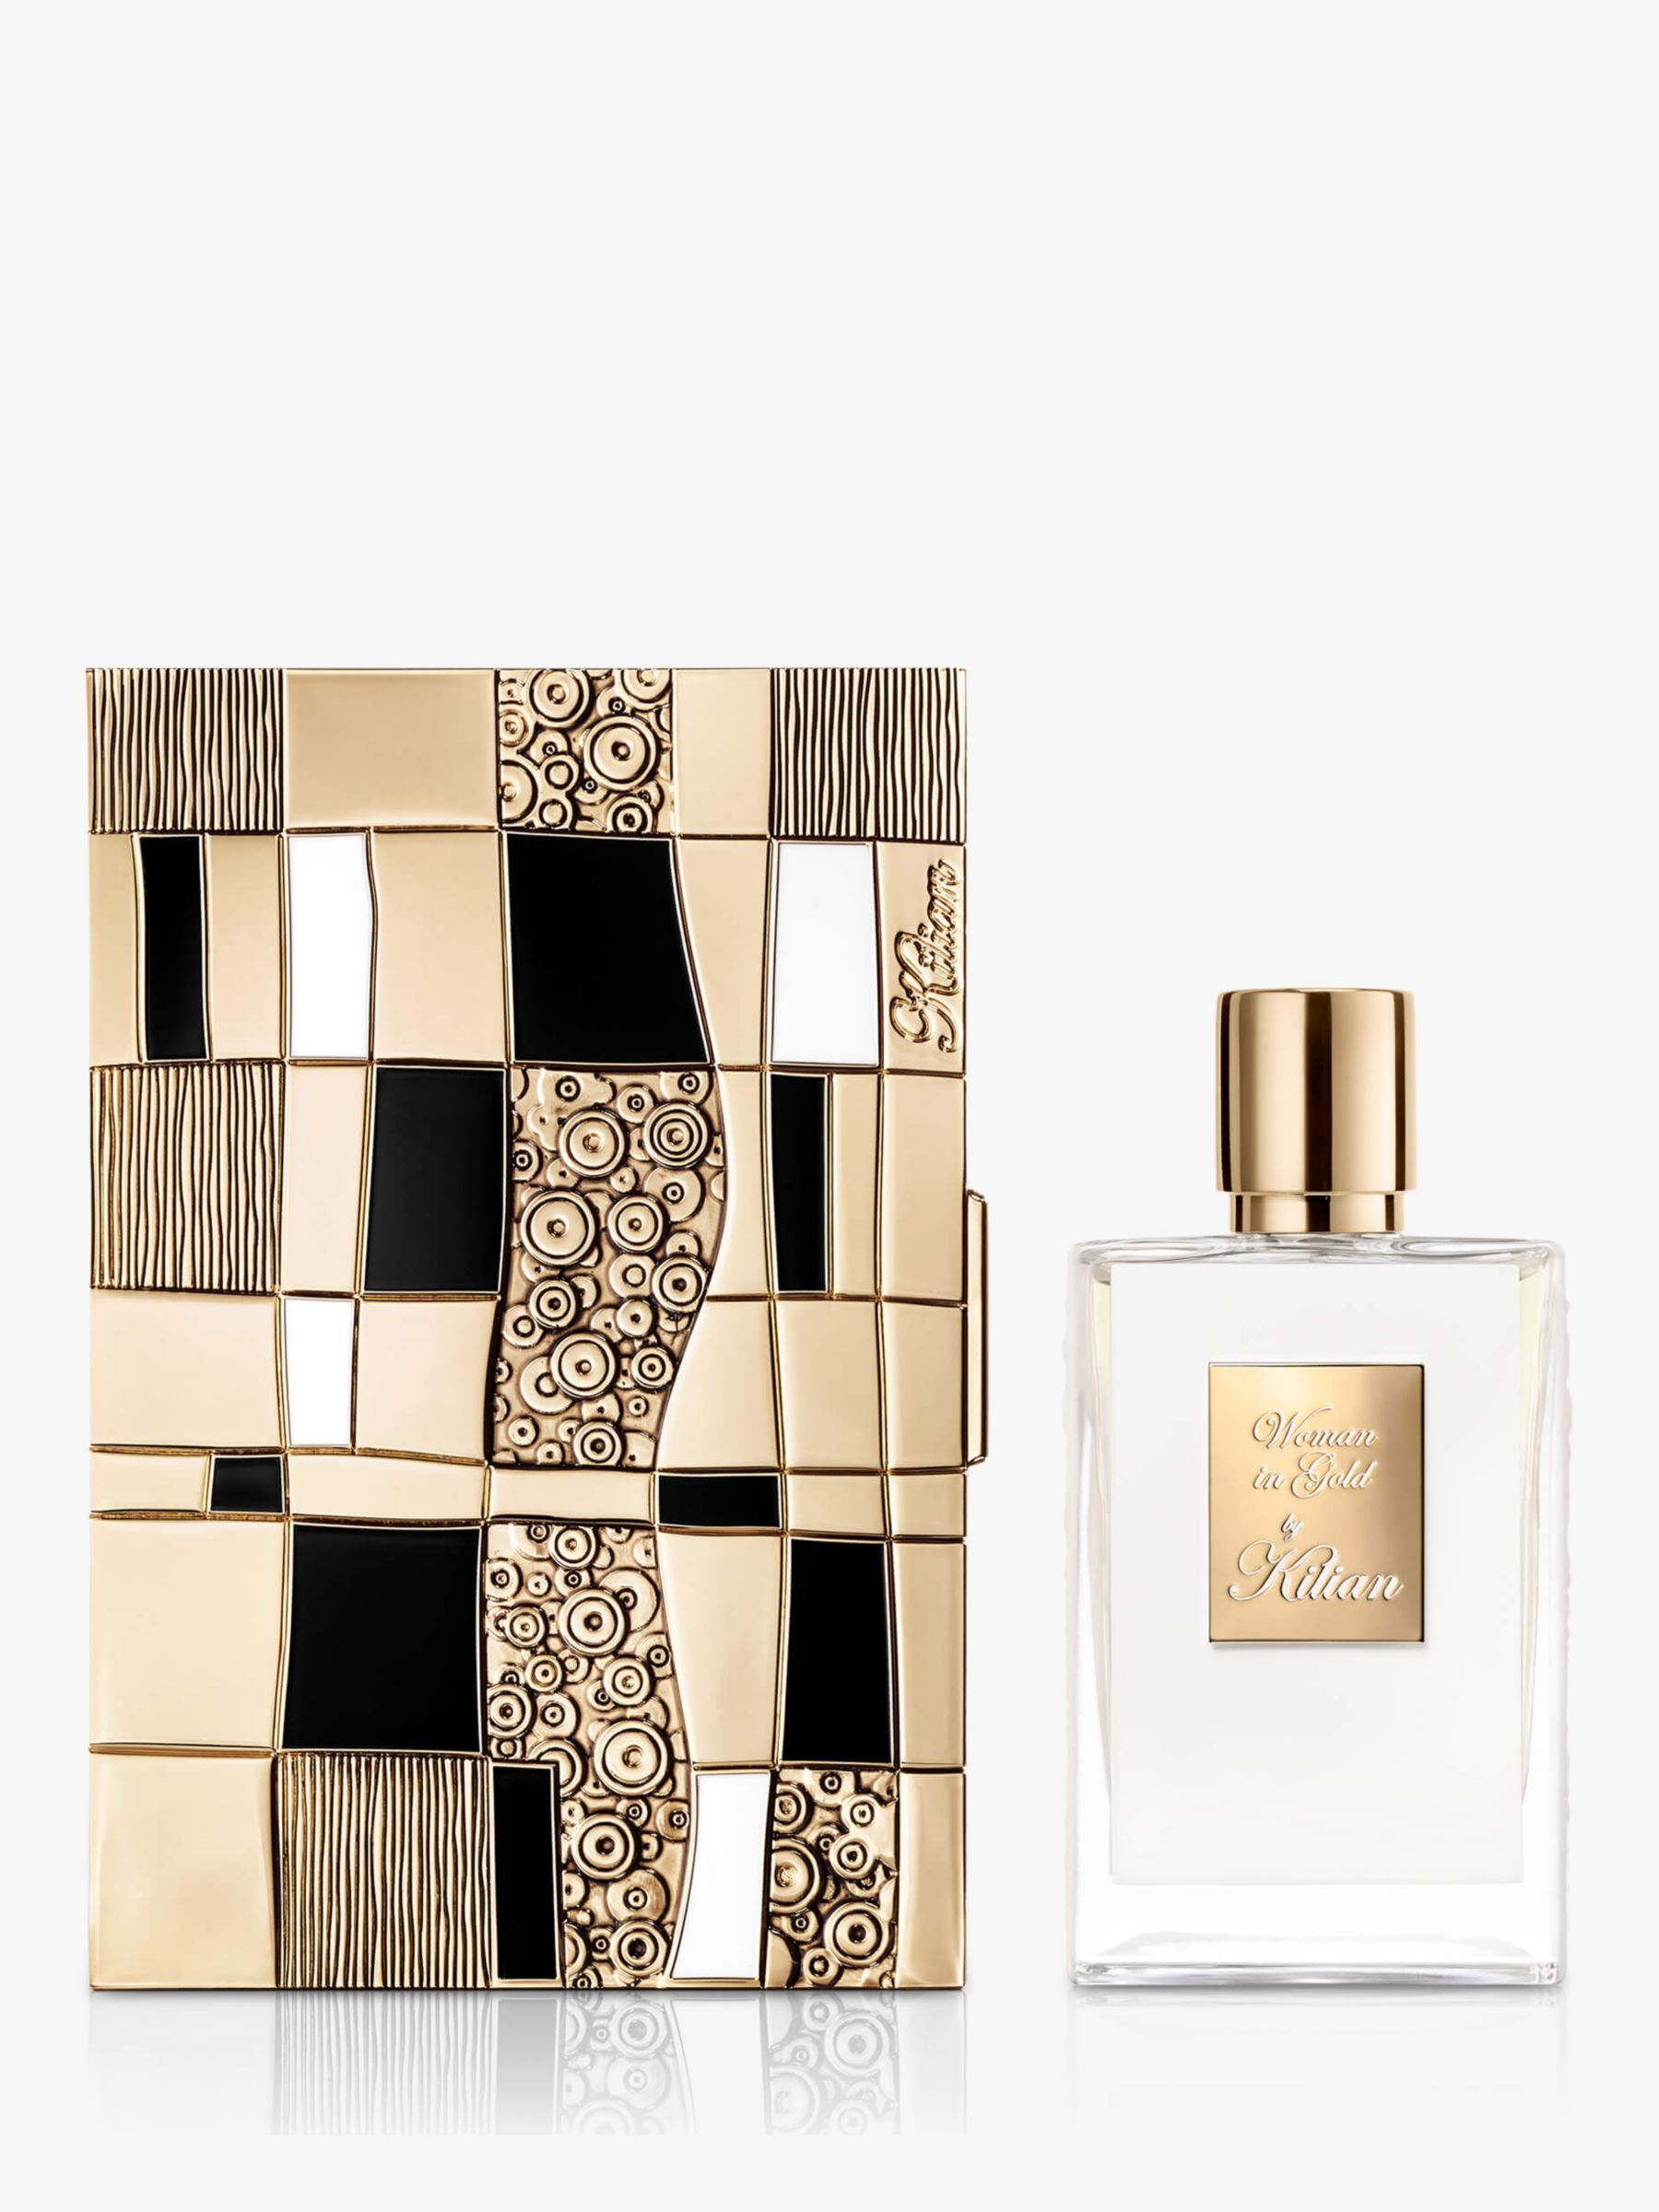 KILIAN PARIS Woman In Gold Eau de Parfum with Case, 50ml 1